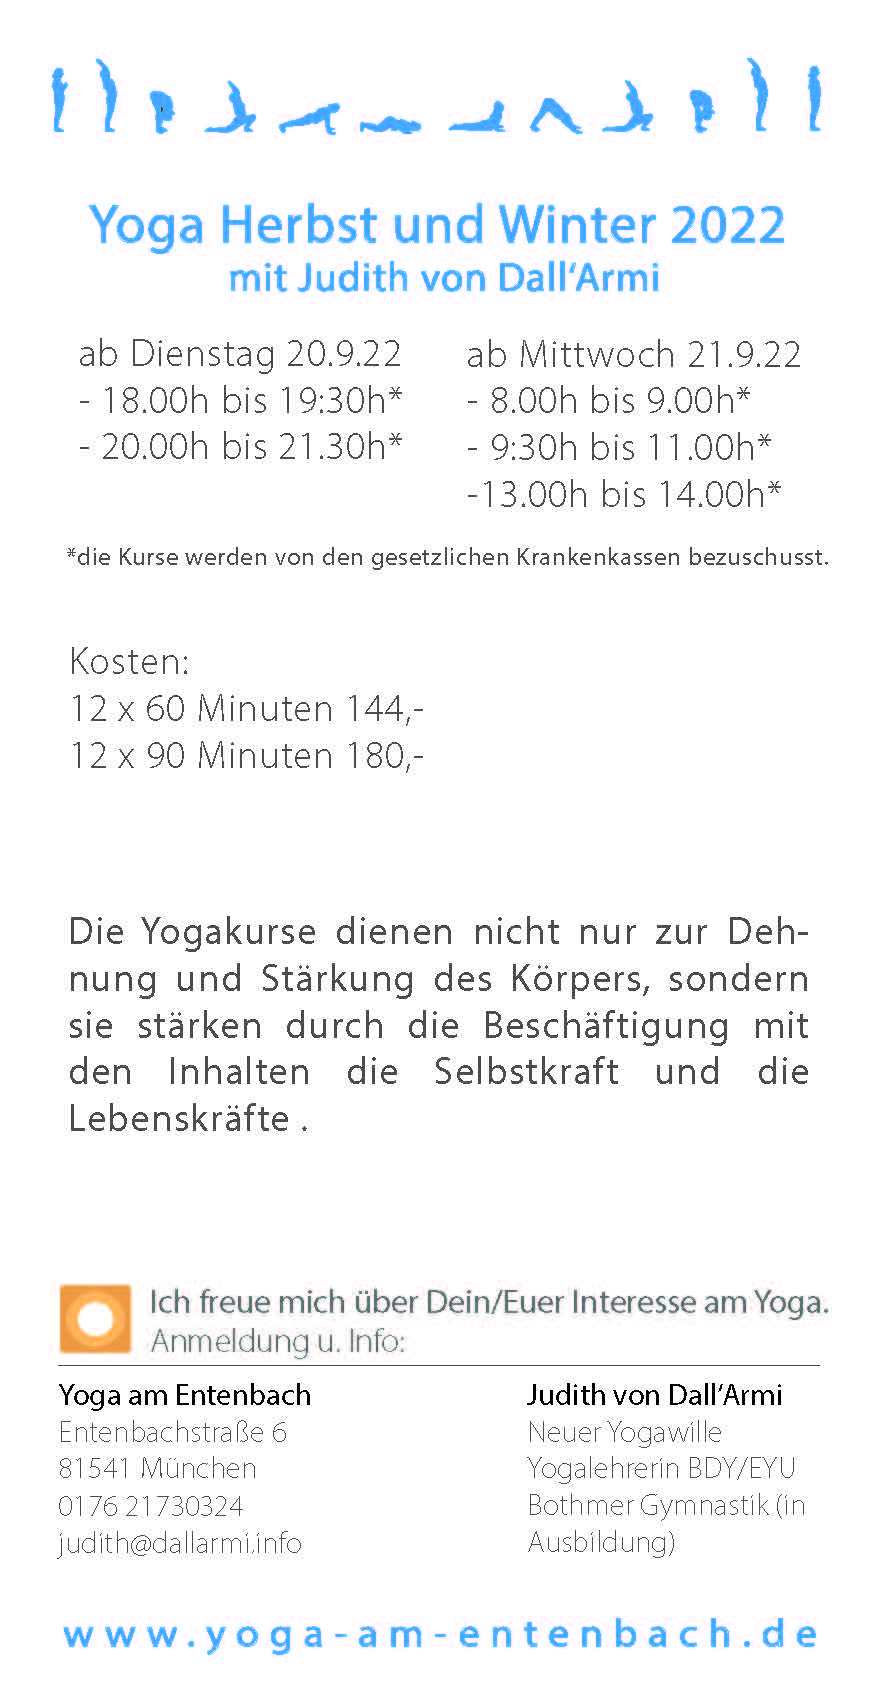 Yoga am Entenbach, München, Kurse Herbst / Winter 2022